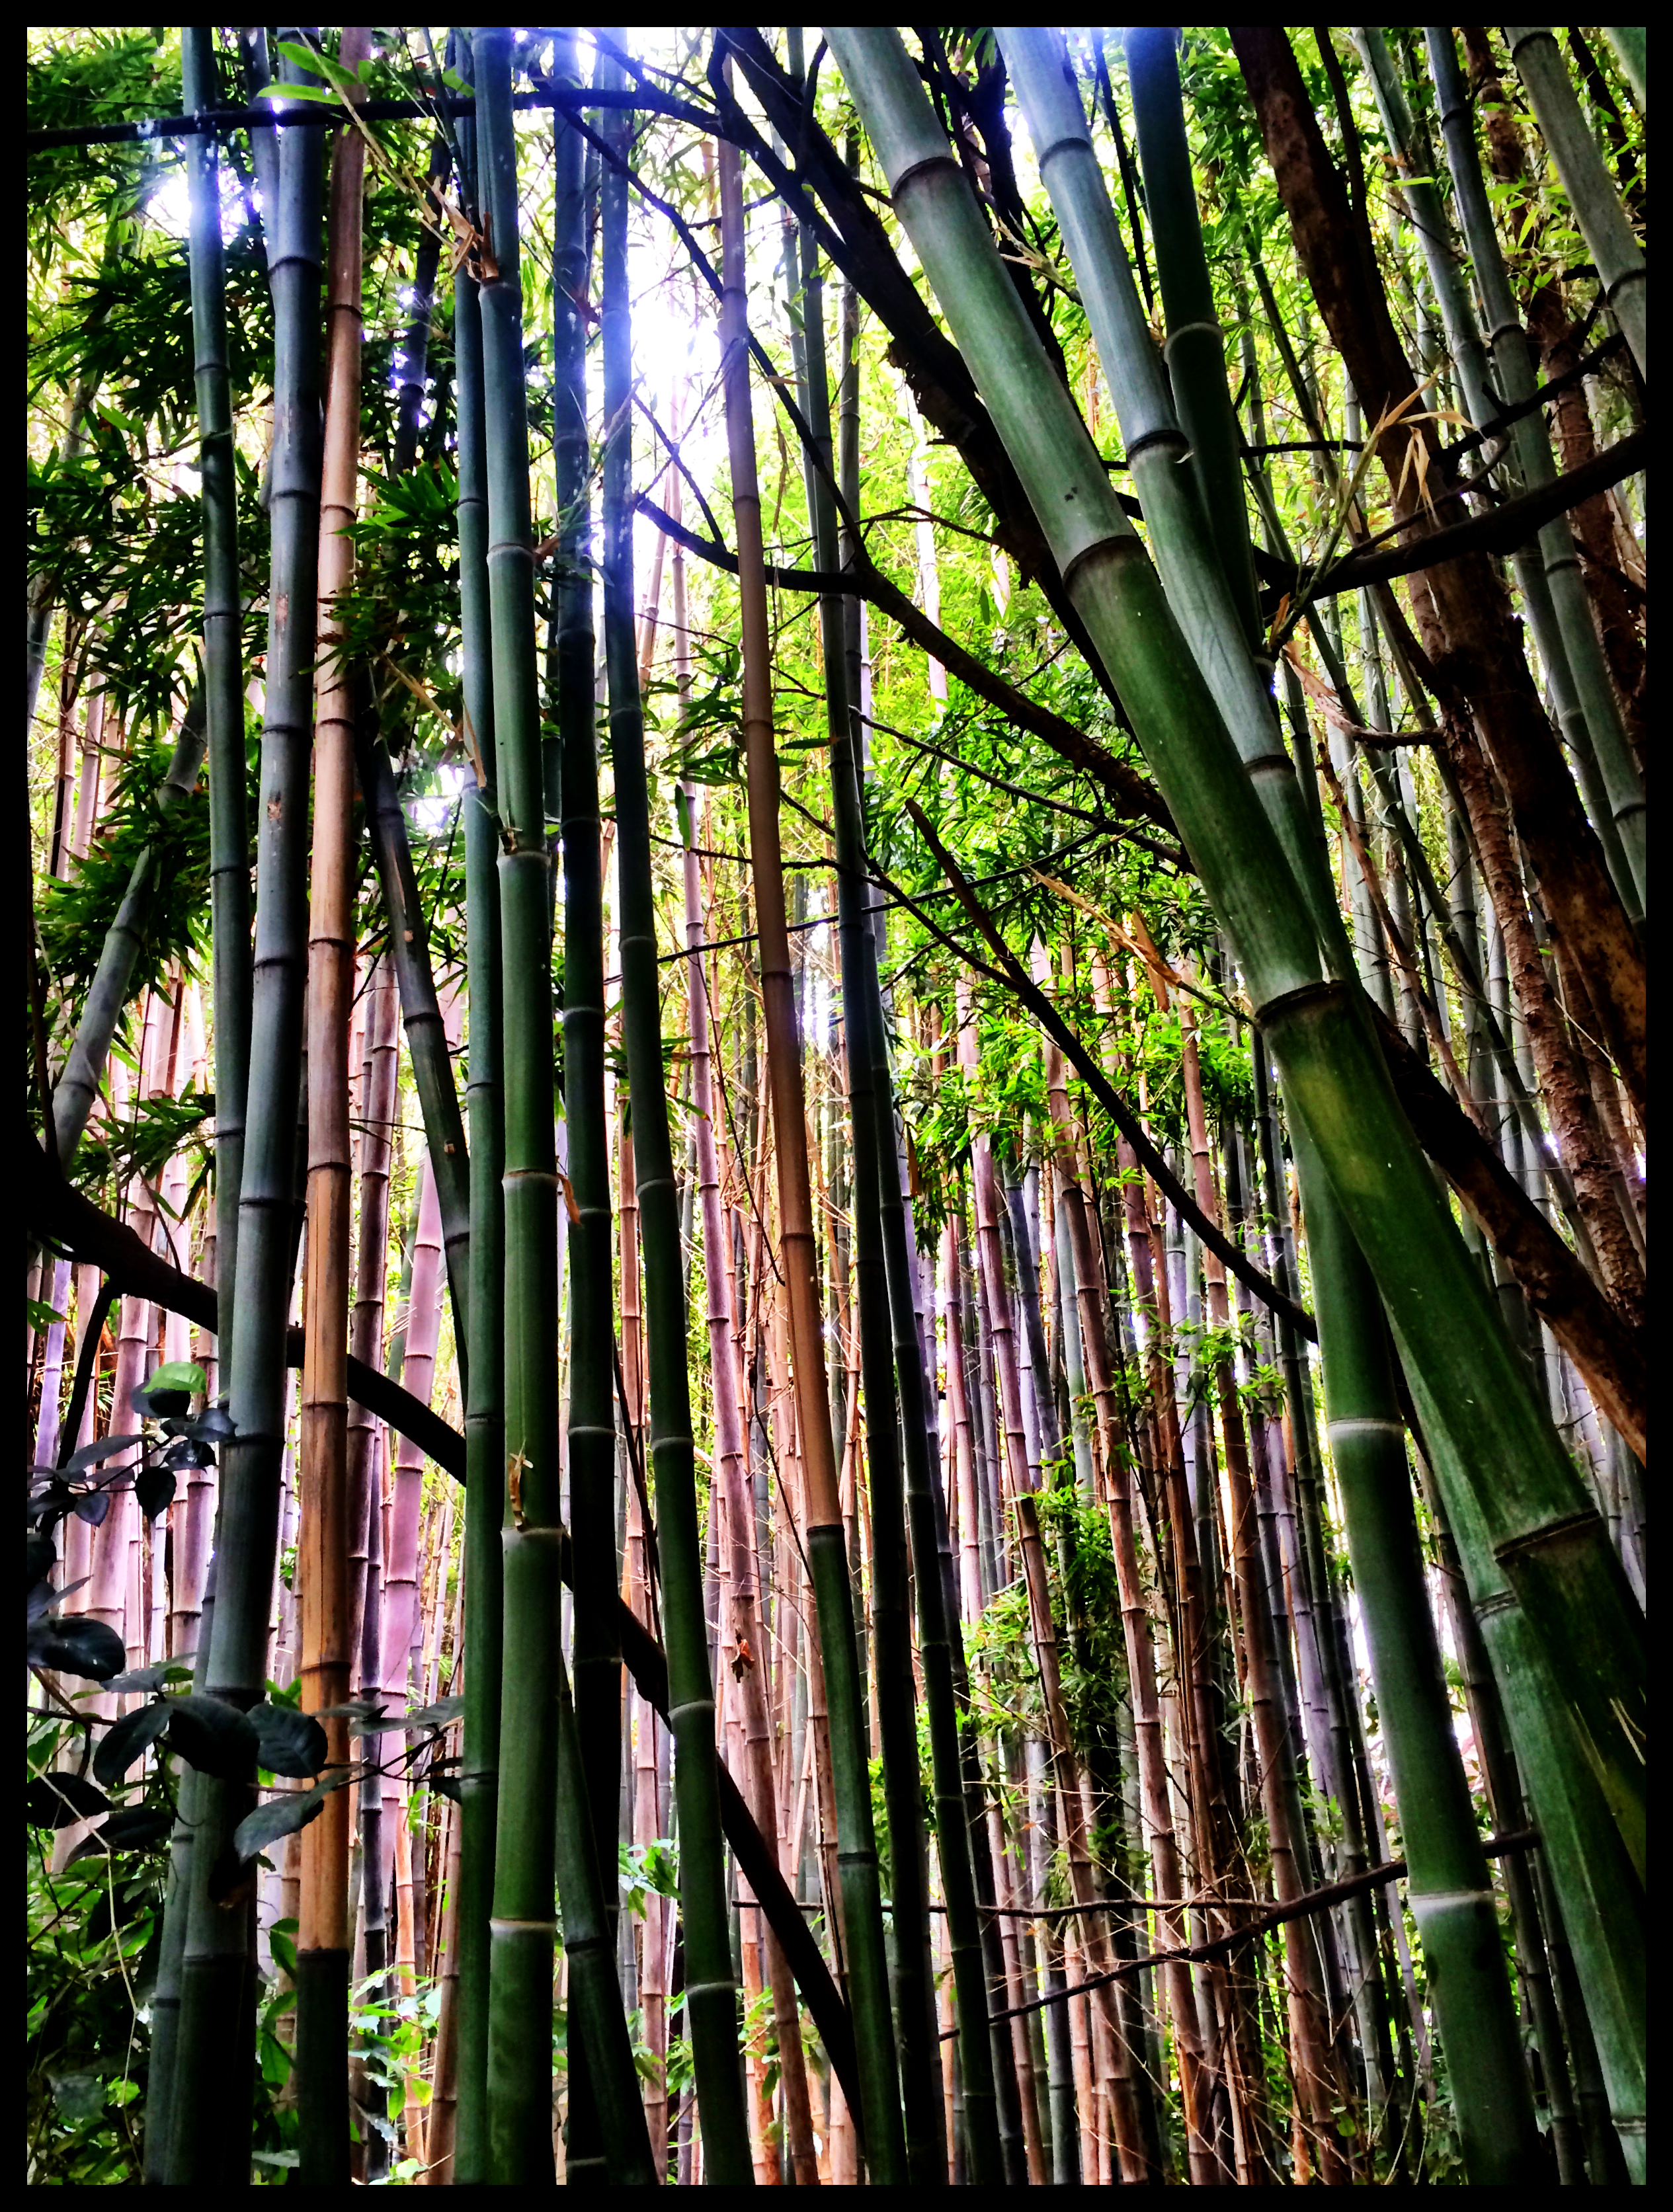 Striking Bamboo Giants